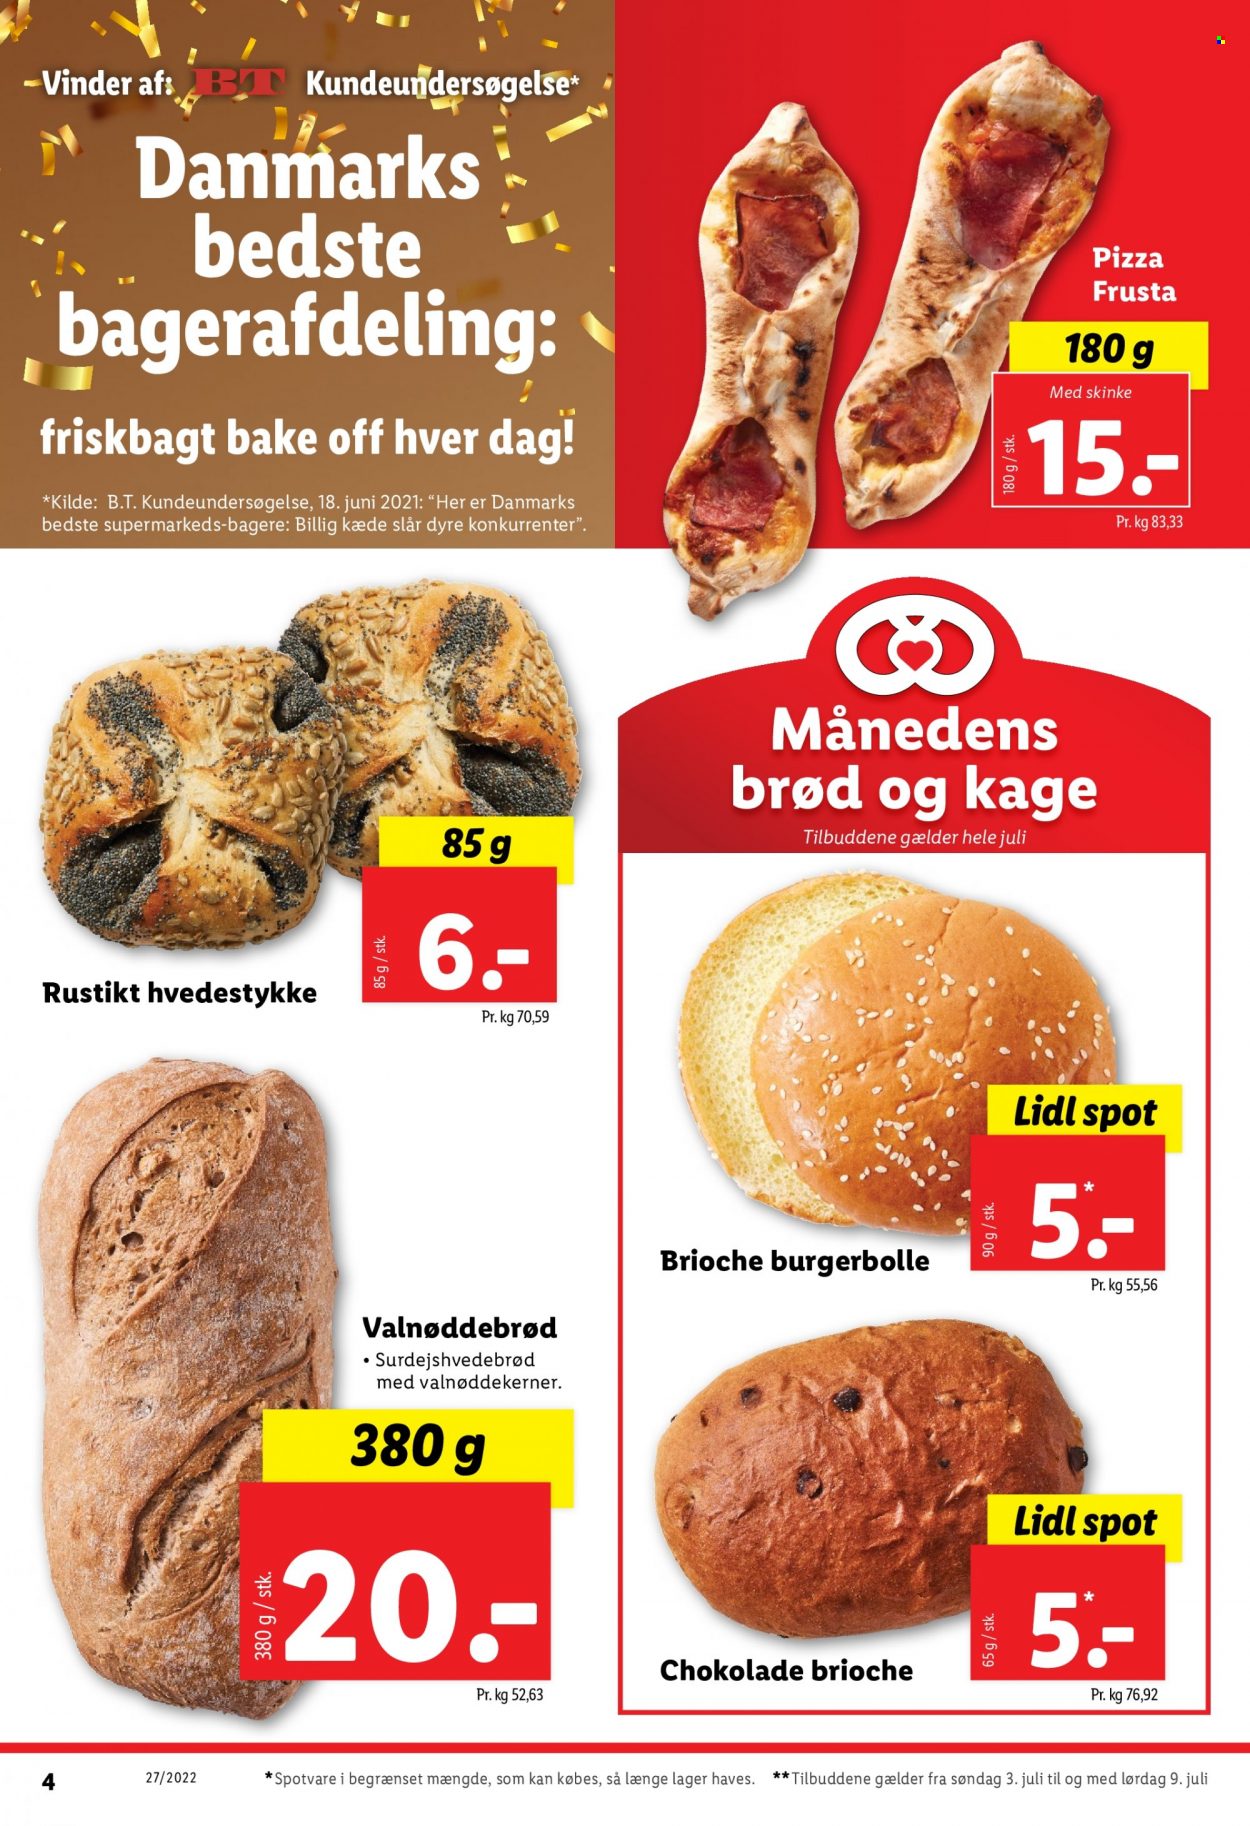 thumbnail - Lidl tilbud  - 3.7.2022 - 9.7.2022 - tilbudsprodukter - brød, pizza, skinke, chokolade. Side 4.